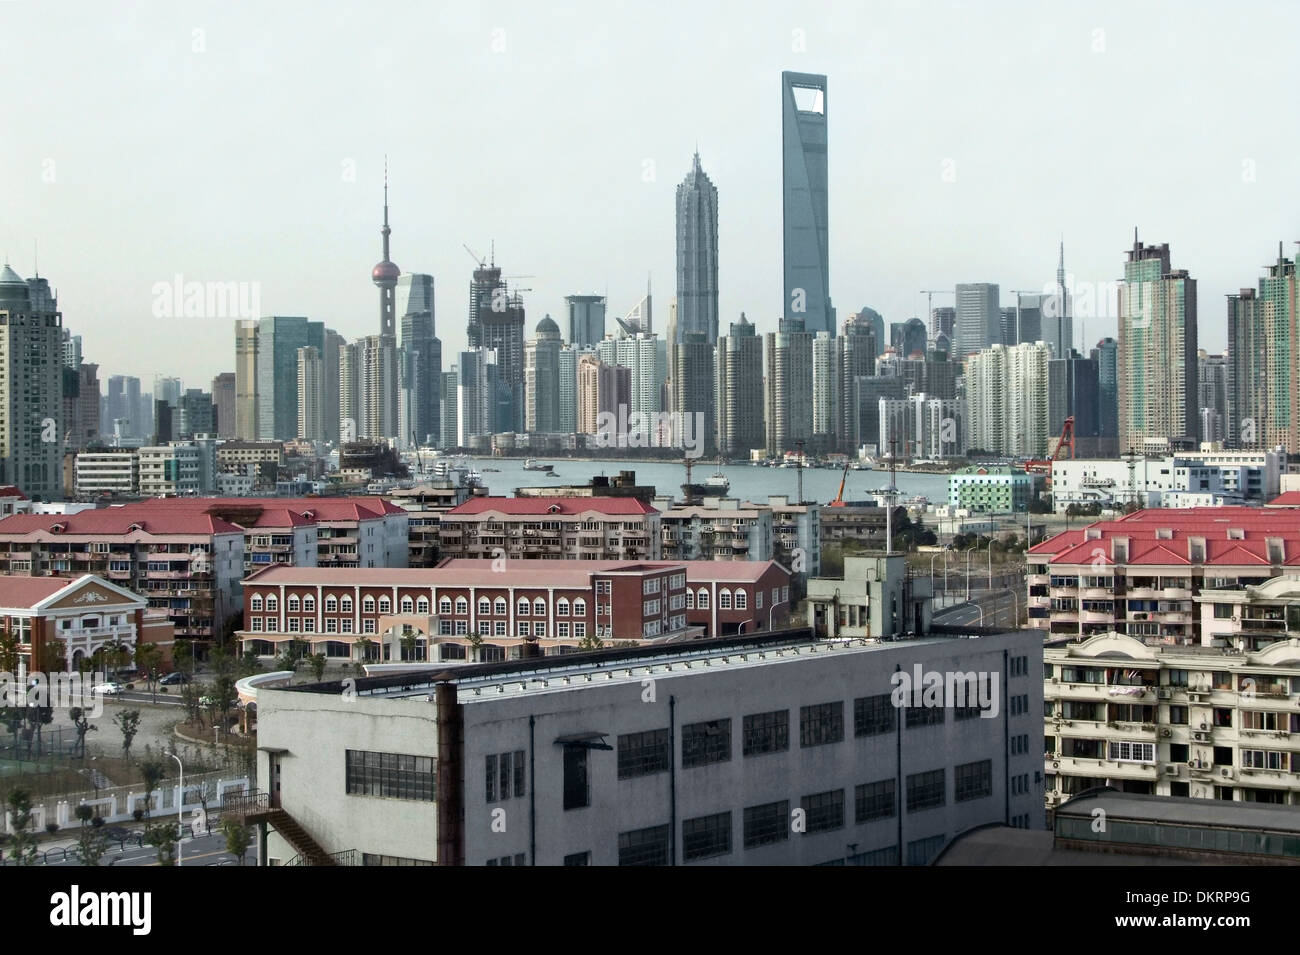 Con vistas a la ciudad, que muestra la silueta de un distrito de Pudong, Shanghai en China Foto de stock